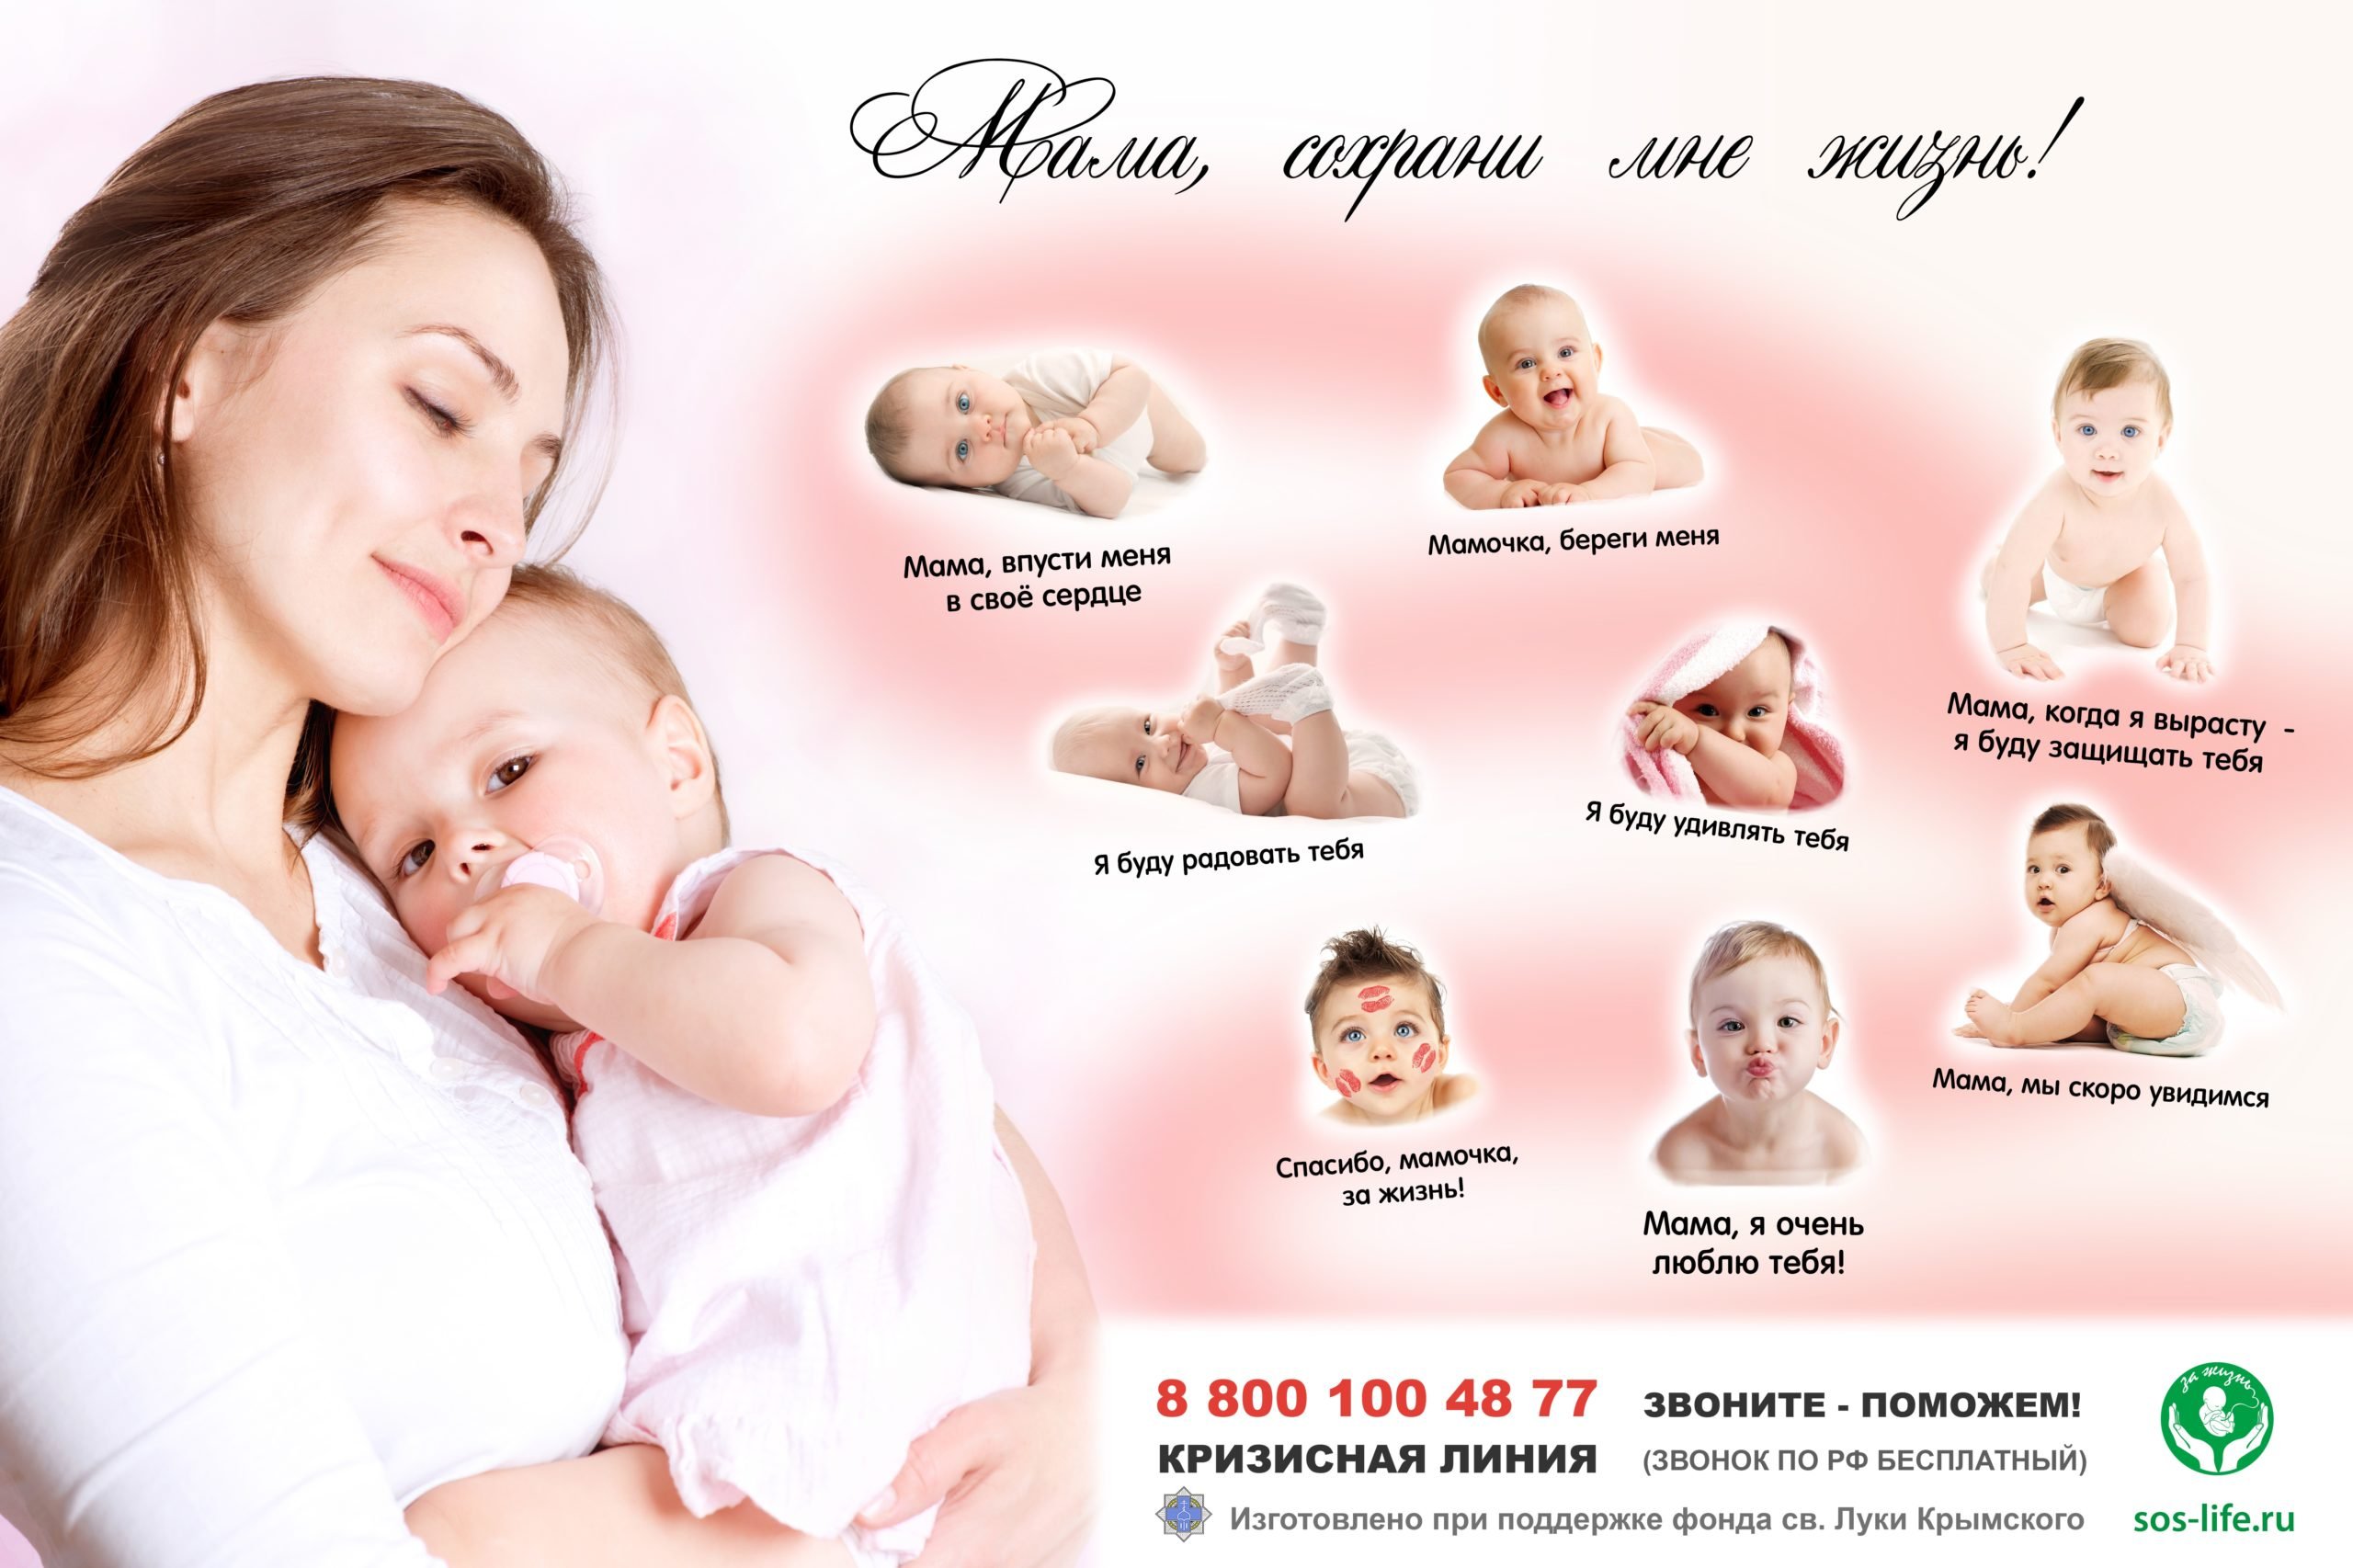 Профилактика абортов картинки. Профилактика абортов плакат. Плакаты беременным. Радость материнства брошюра.